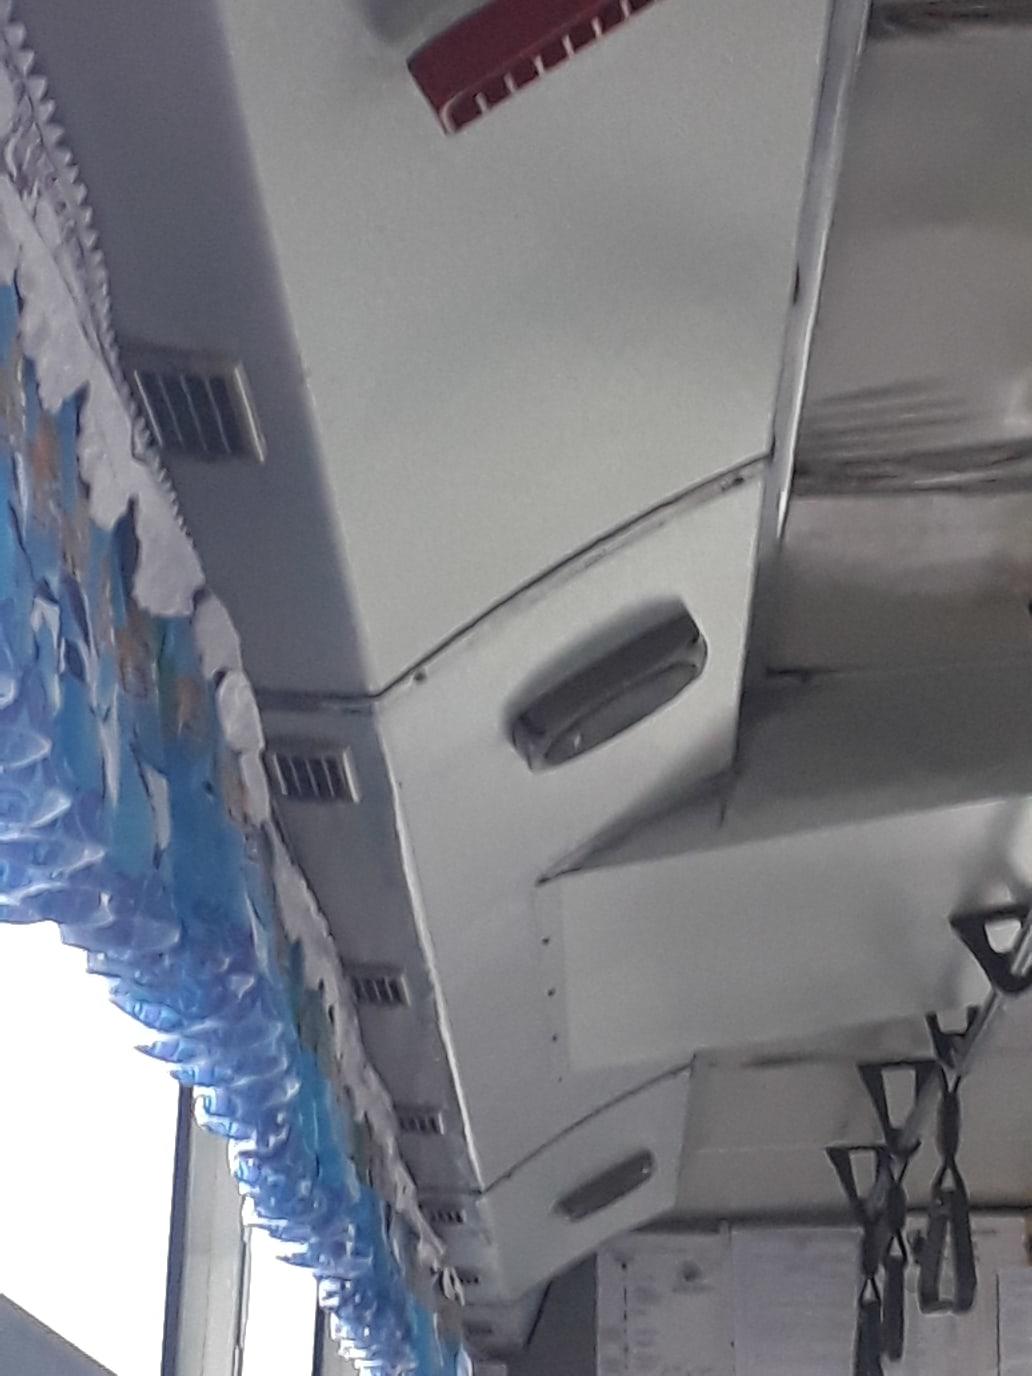 «А в салоне лужи» - очевидец показал состояние некоторых читинских автобусов